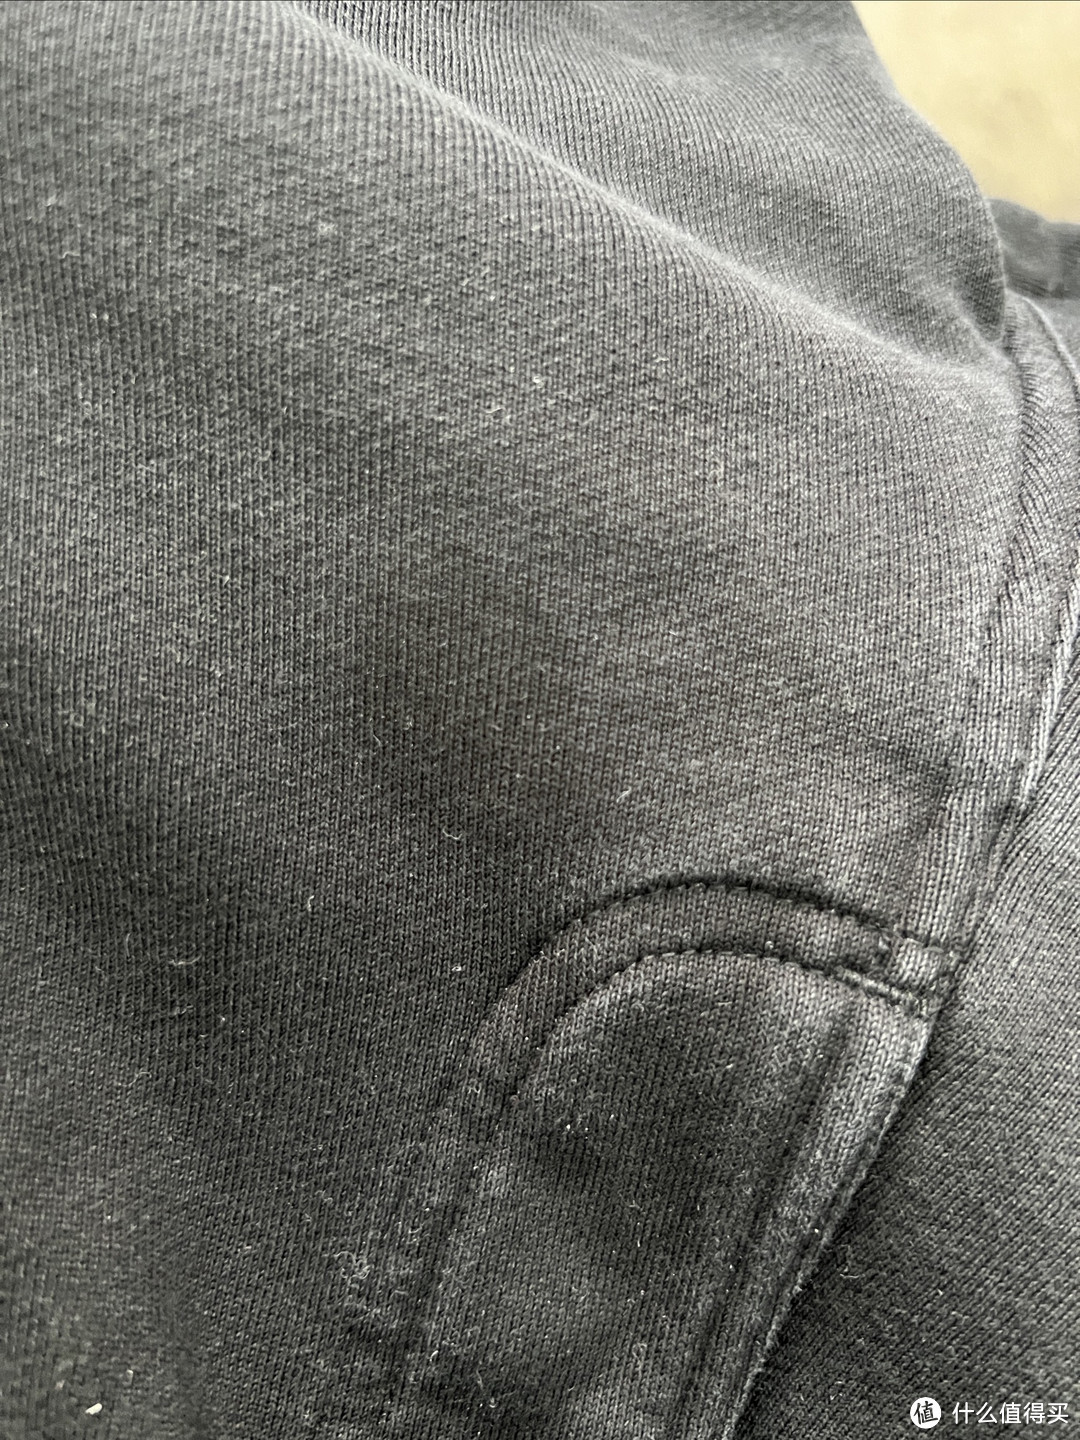 可以看到裤子上面大片的油渍。所以清洗还是一个大工程。